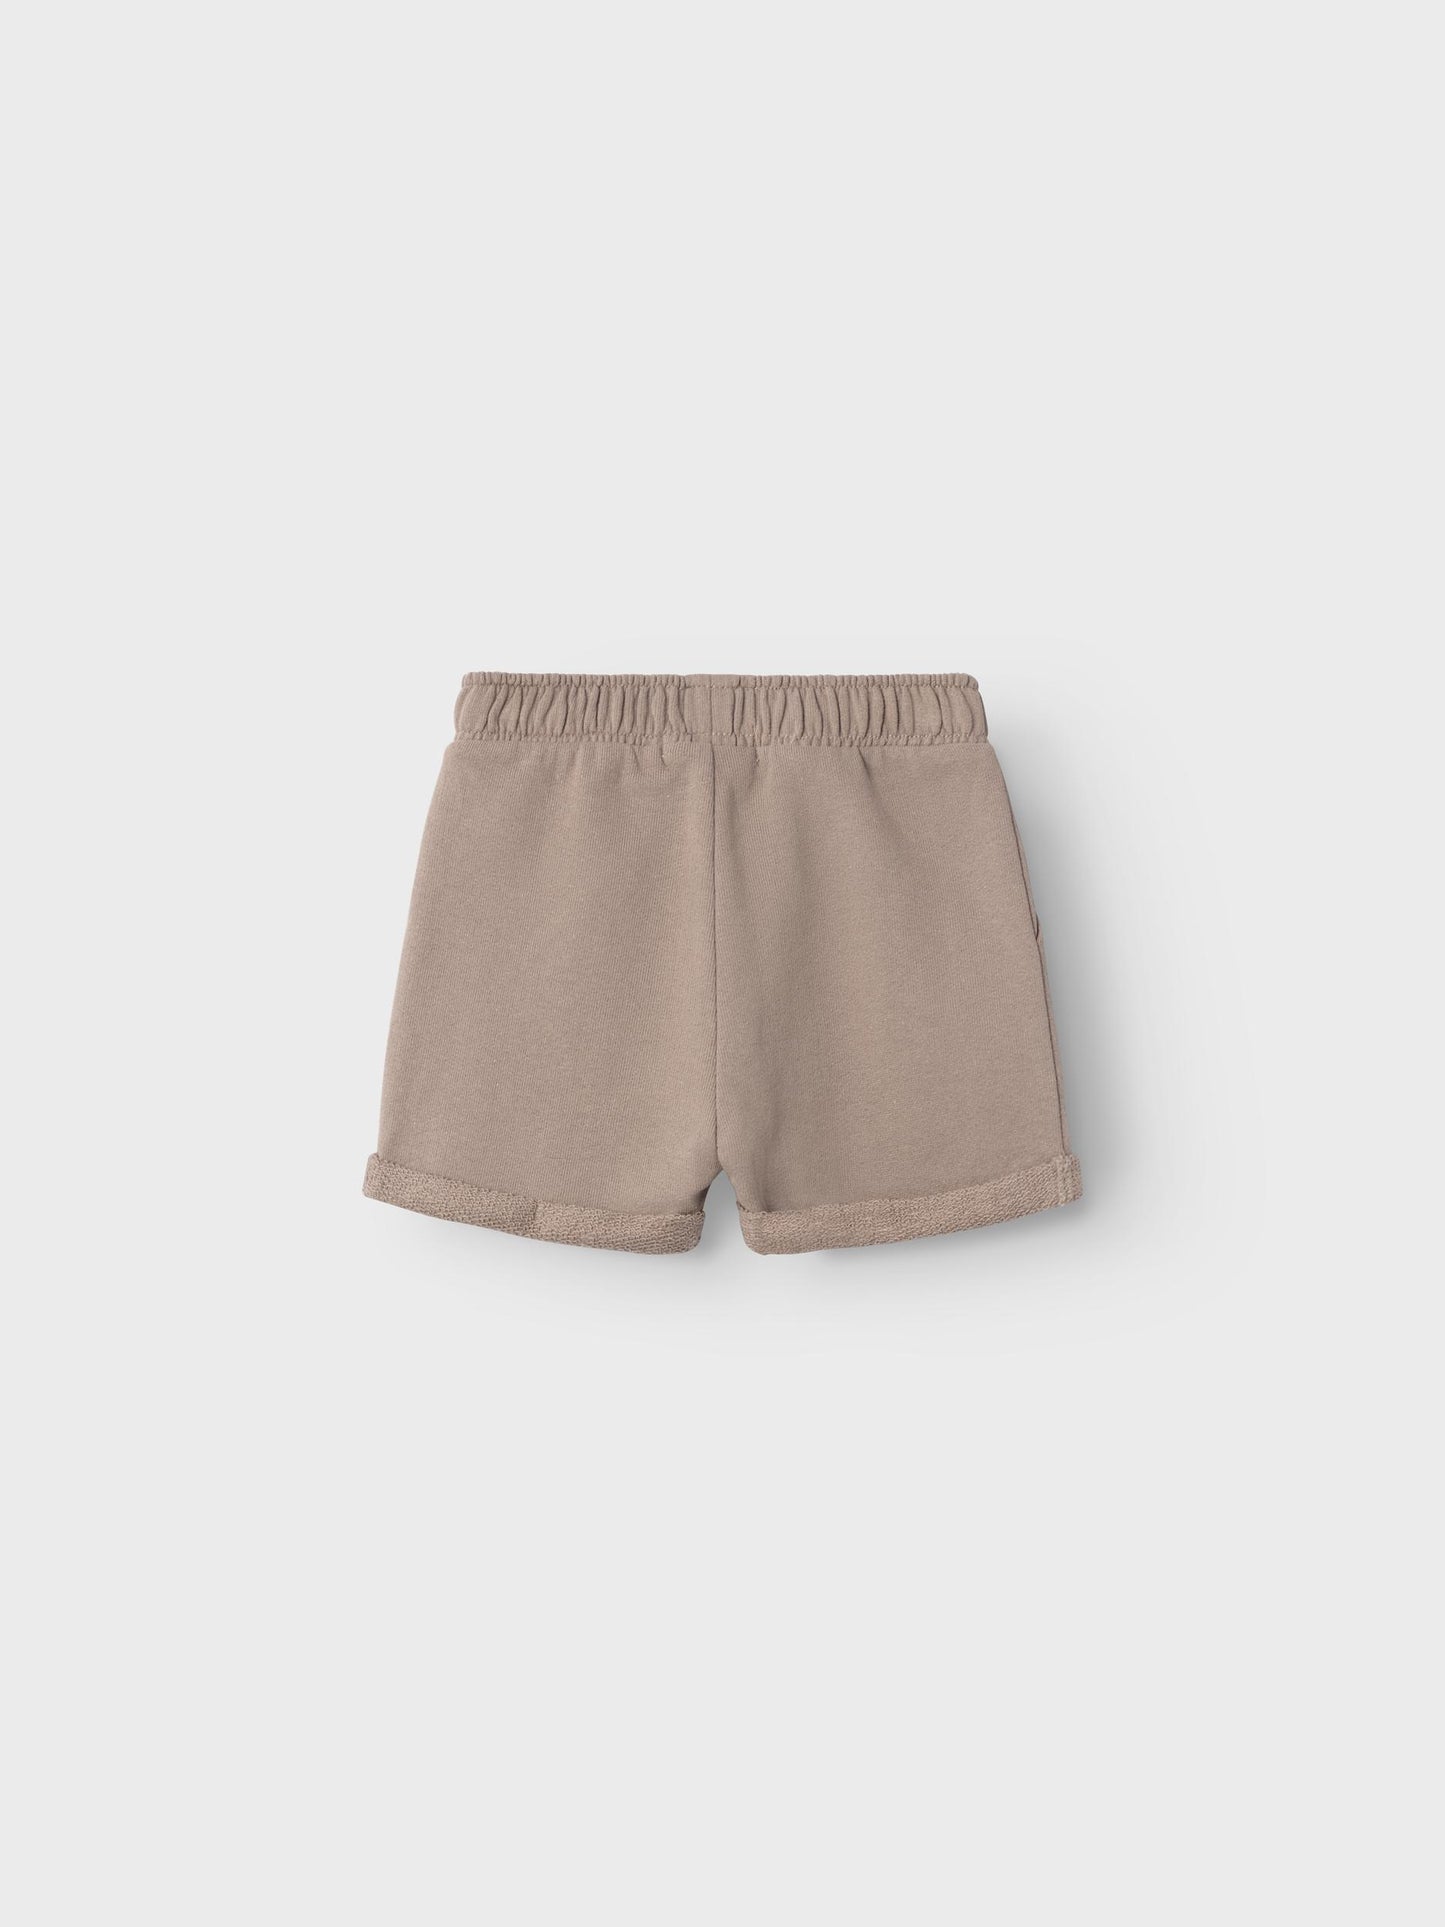 Lil atelier - Jobo sweat shorts - Mocha meringue